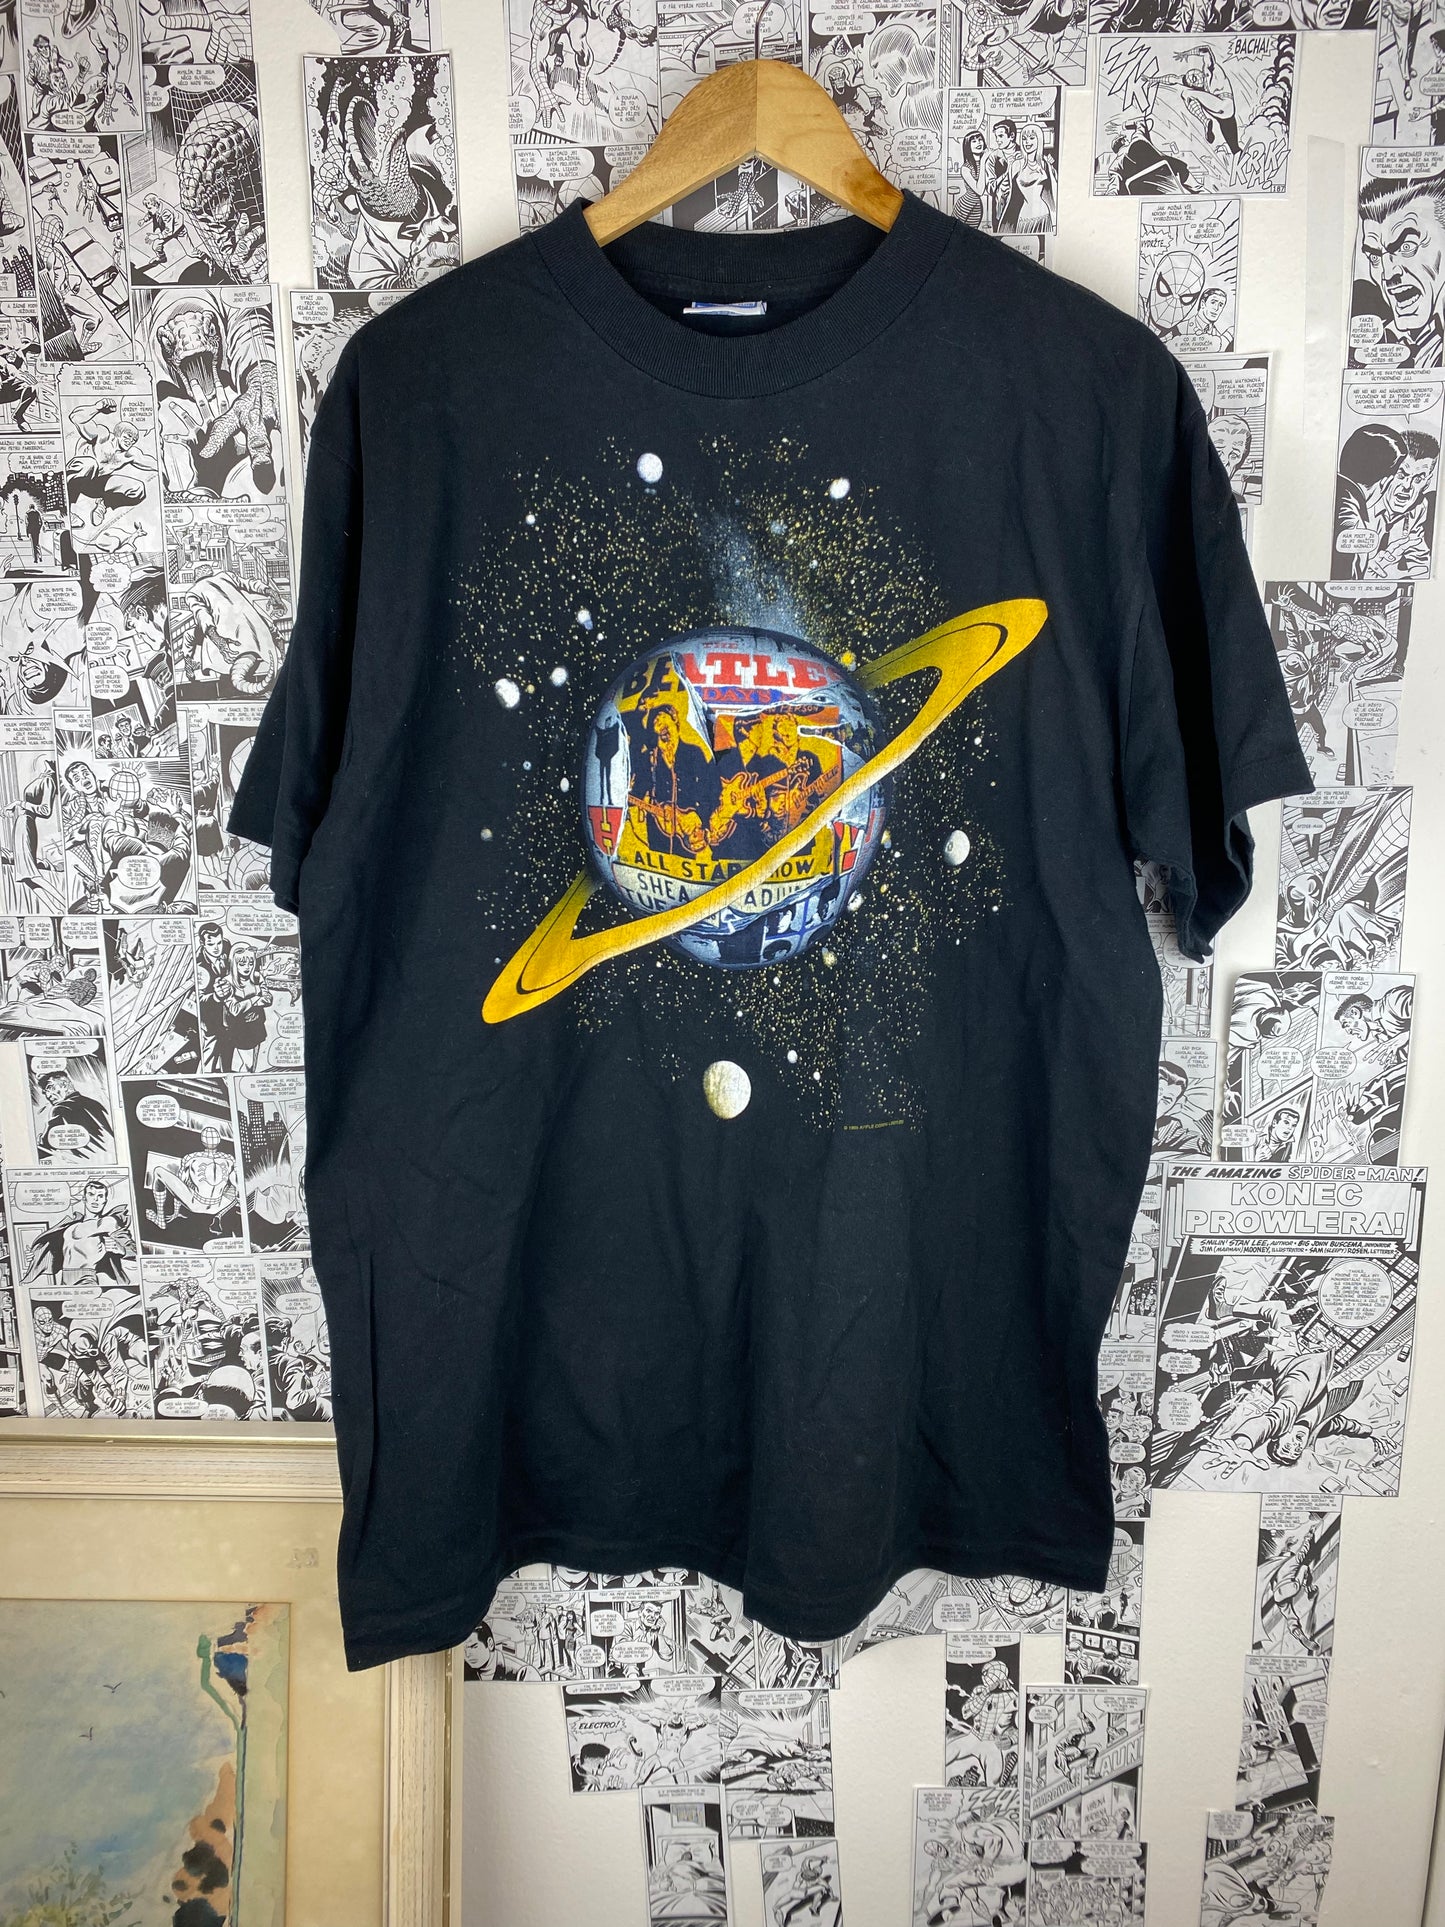 Vintage Beatles “Anthology 2” 1996 t-shirt - size XL